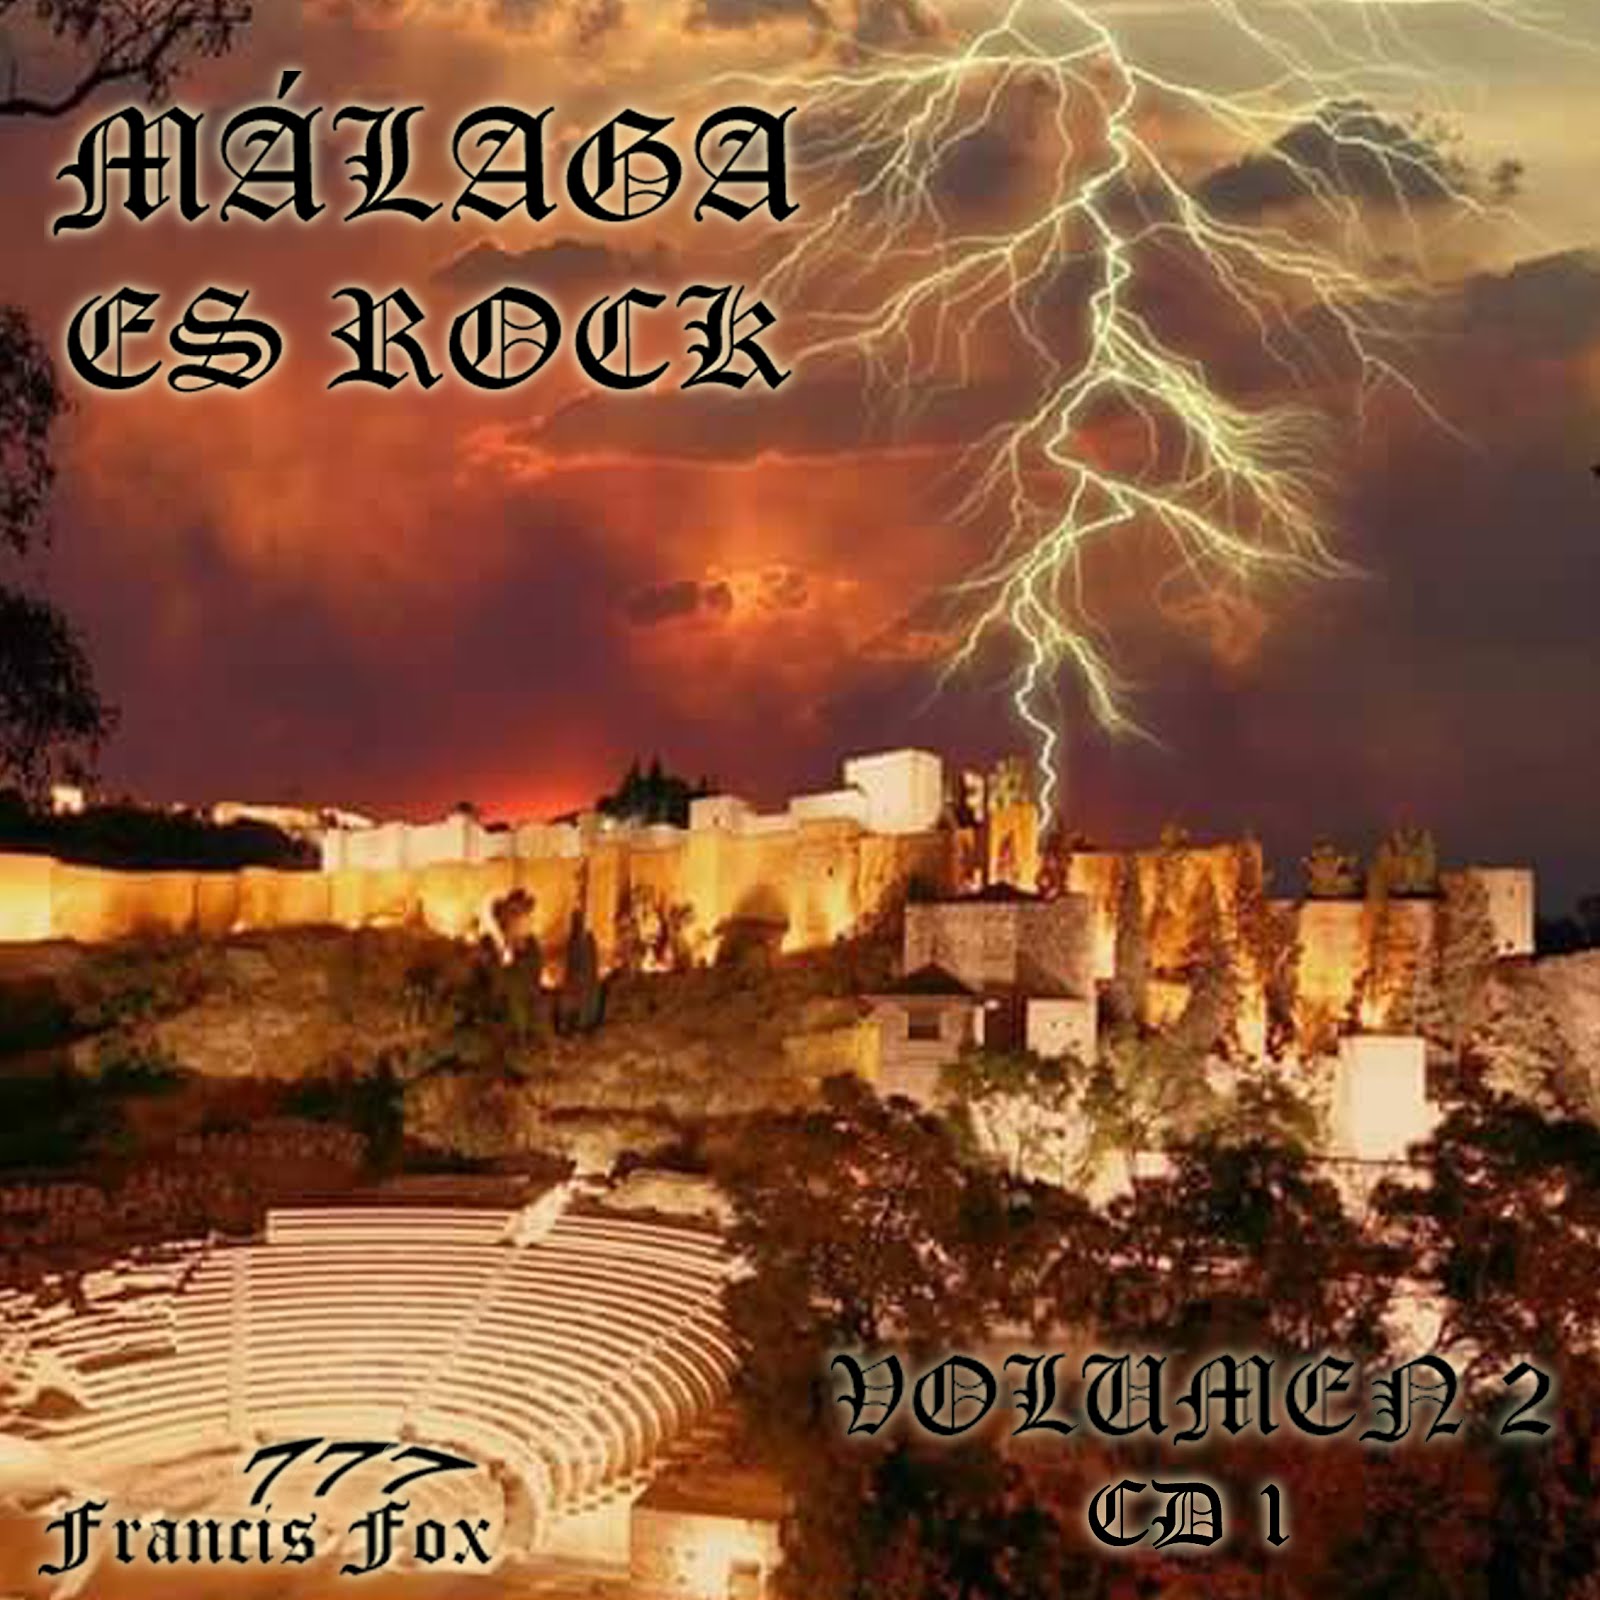 Málaga es Rock volumen 2